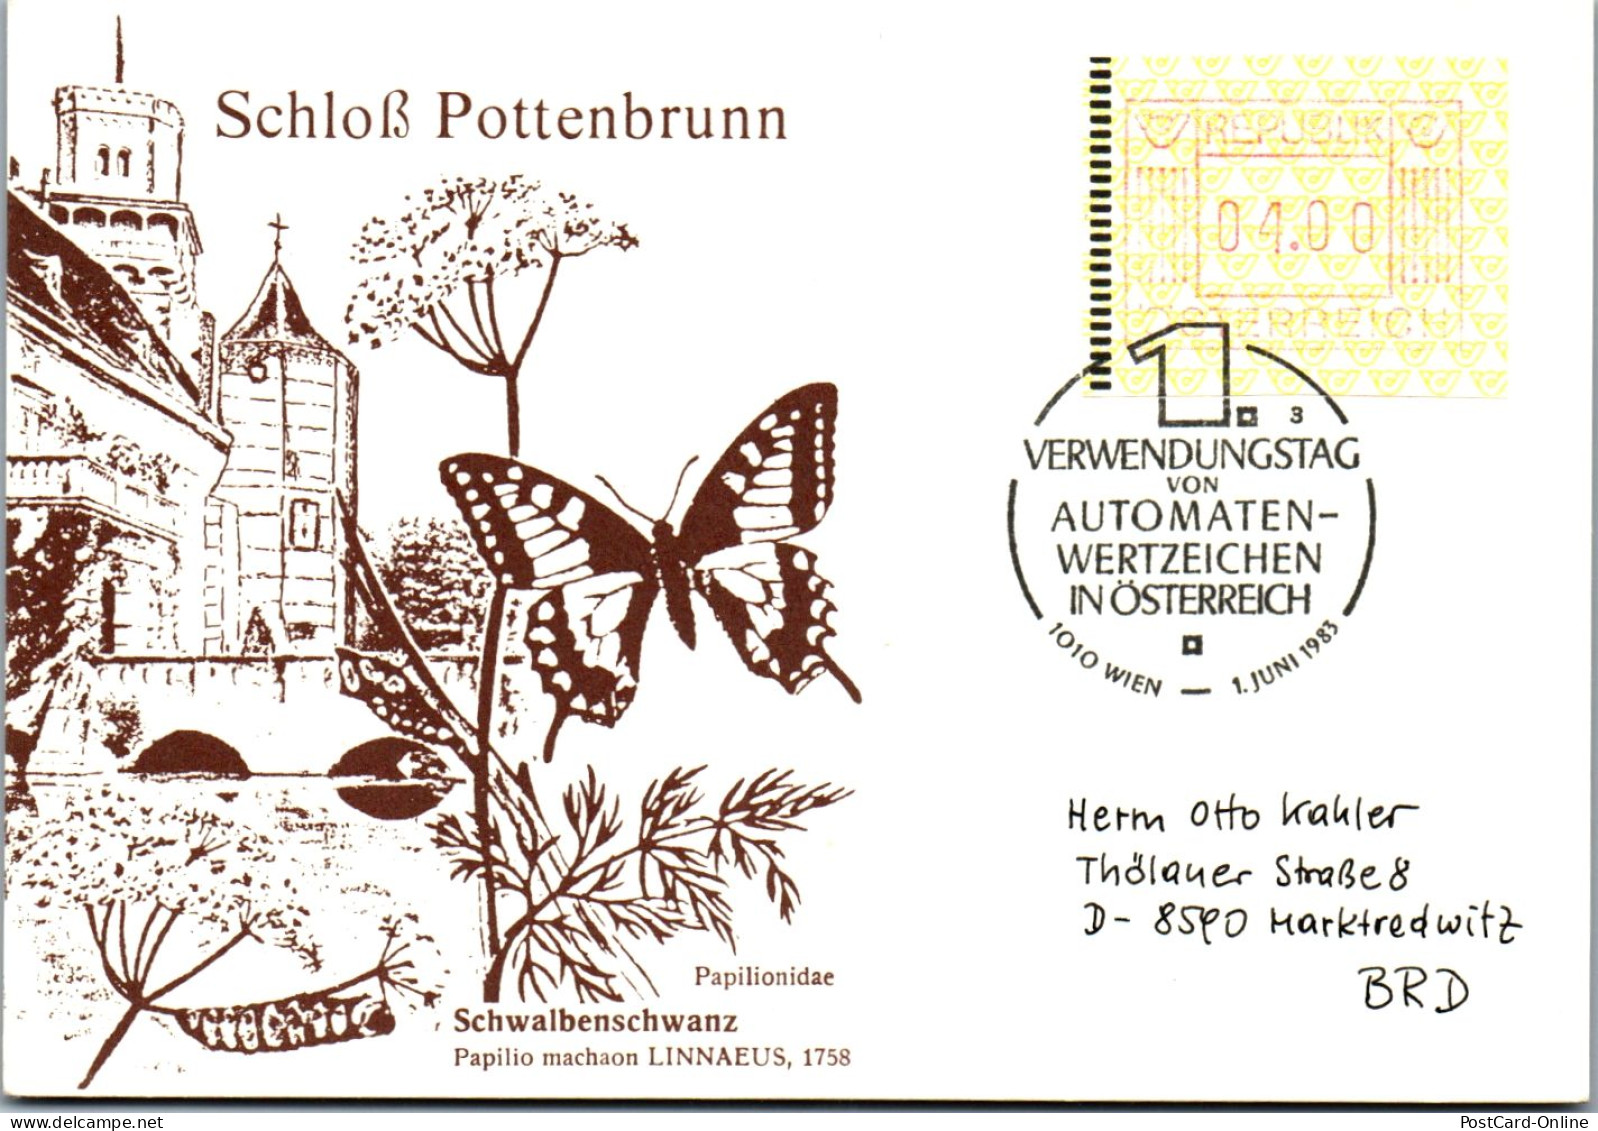 44581 - Österreich - Automatenmarke , Schloß Pottenbrunn , Automatenwertzeichen - Nicht Gelaufen 1983 - Vignette [ATM]